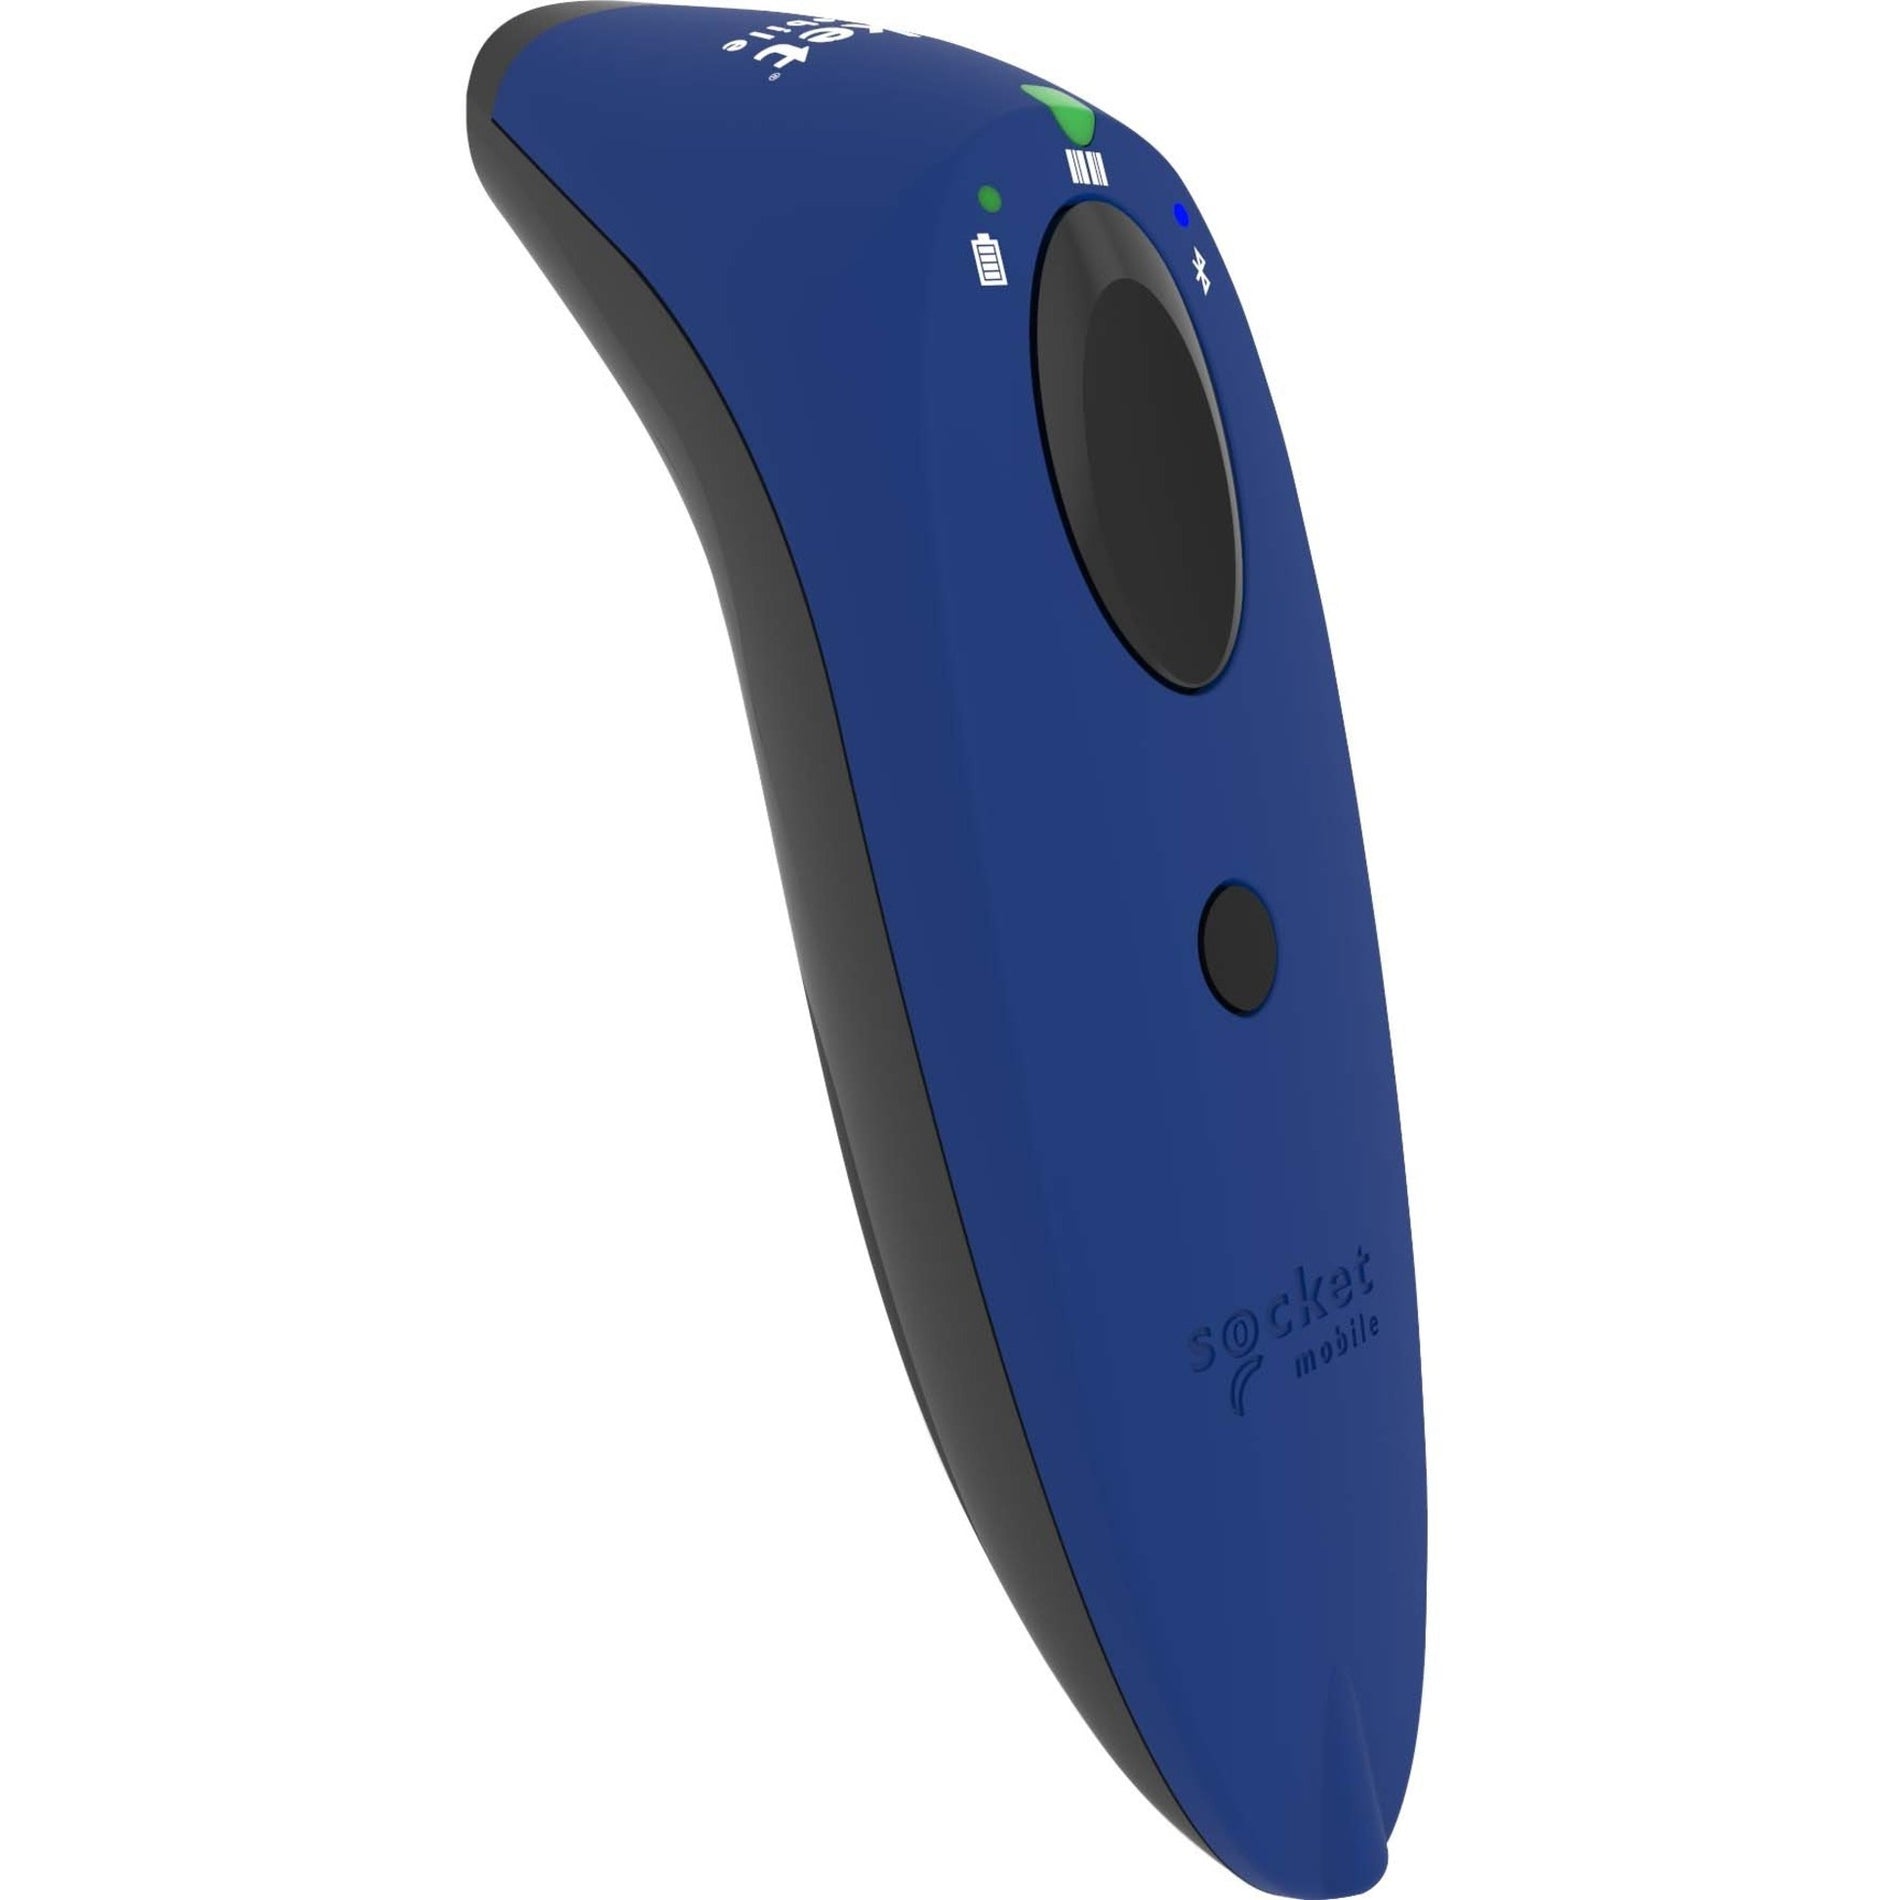 品牌名称: Socket Mobile 扫描仪款式: SocketScan S730 镭射条形码扫描仪 颜色: 蓝色 连接方式: 无线 扫描类型: 1D扫描器